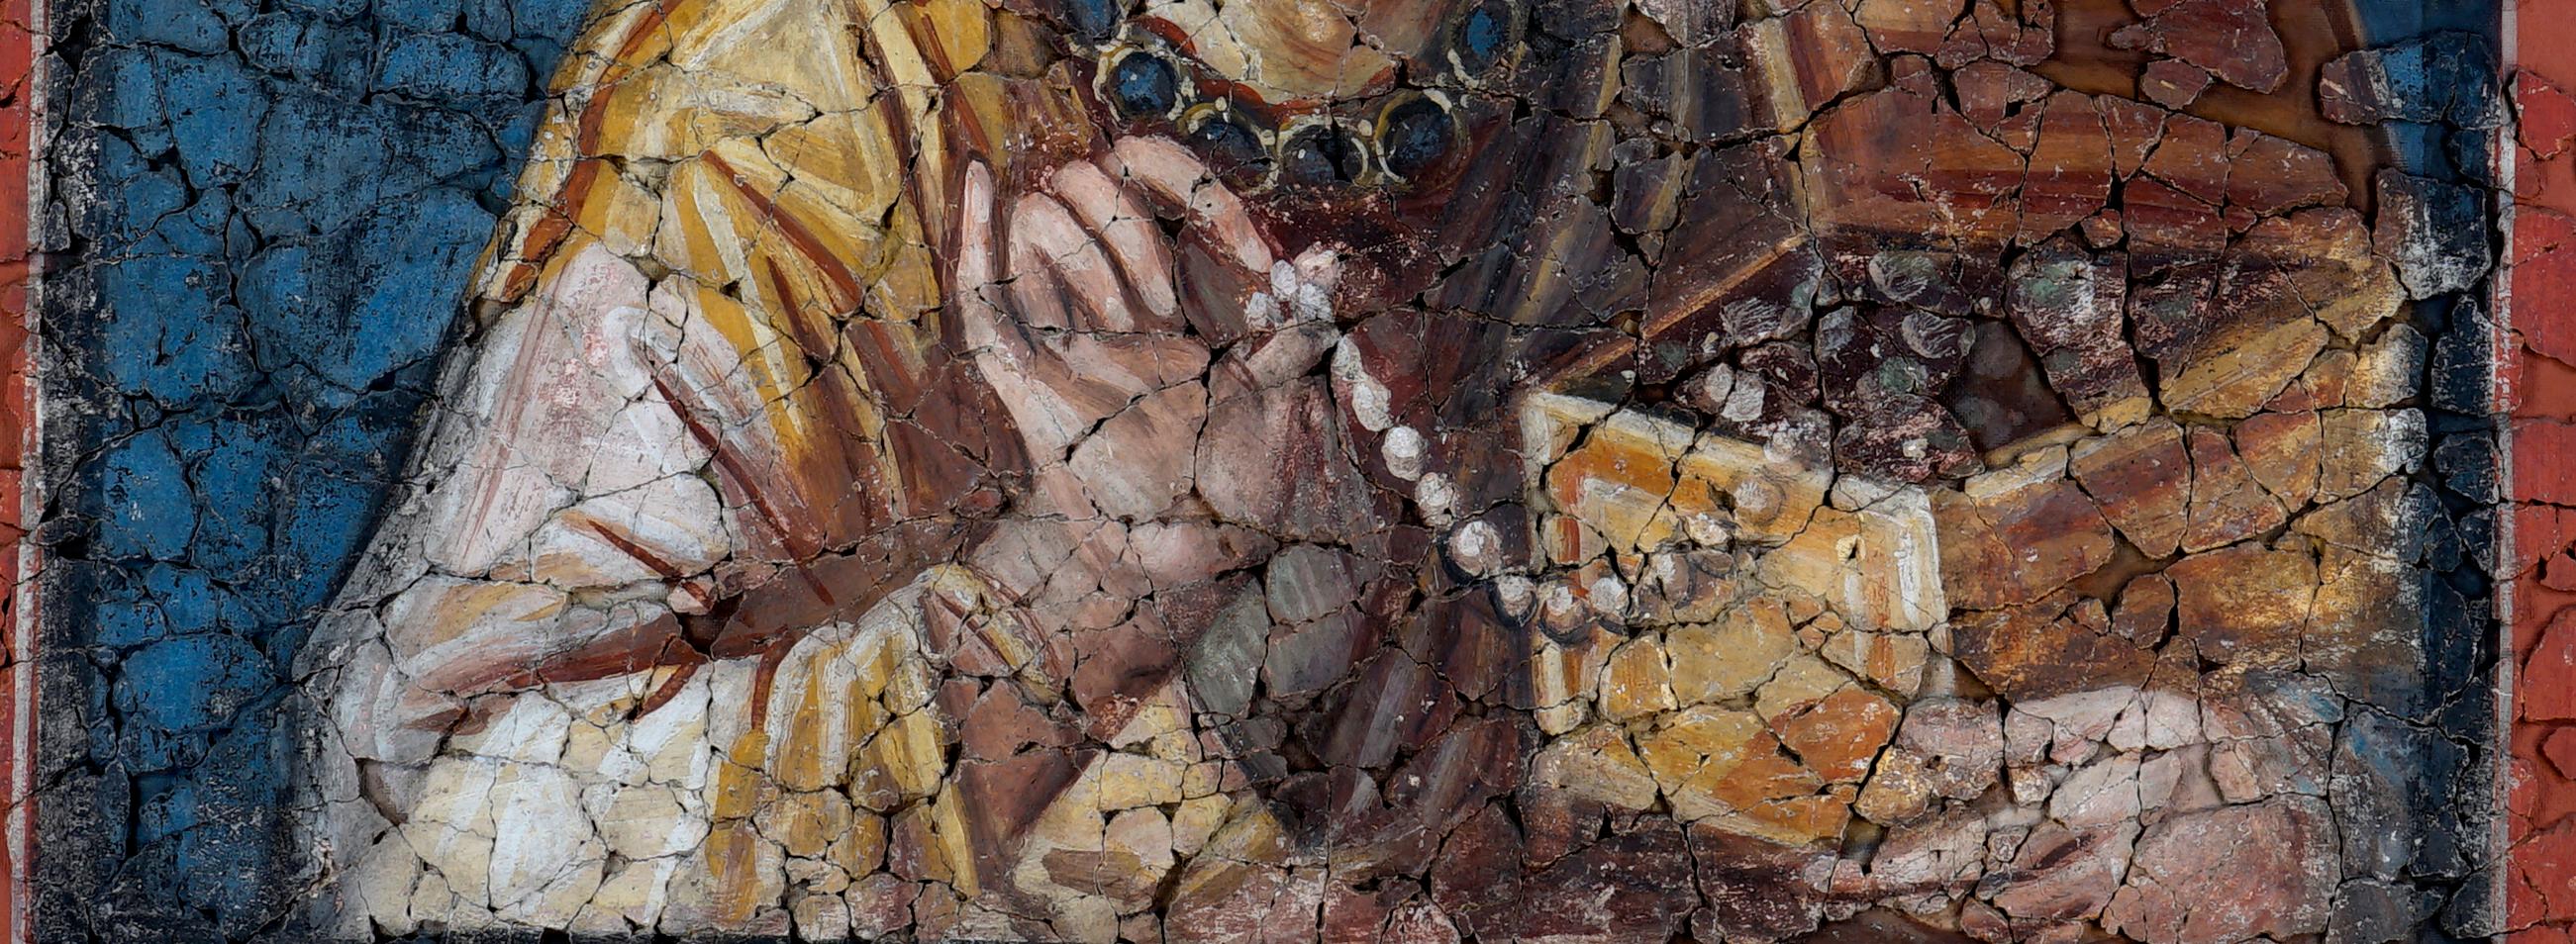 Man sieht einen Ausschnitt eines Gemälde in Brauntönen mit einer Frau, die eine offene Schatulle im Arm hält und in der Hand eine Perlenkette.